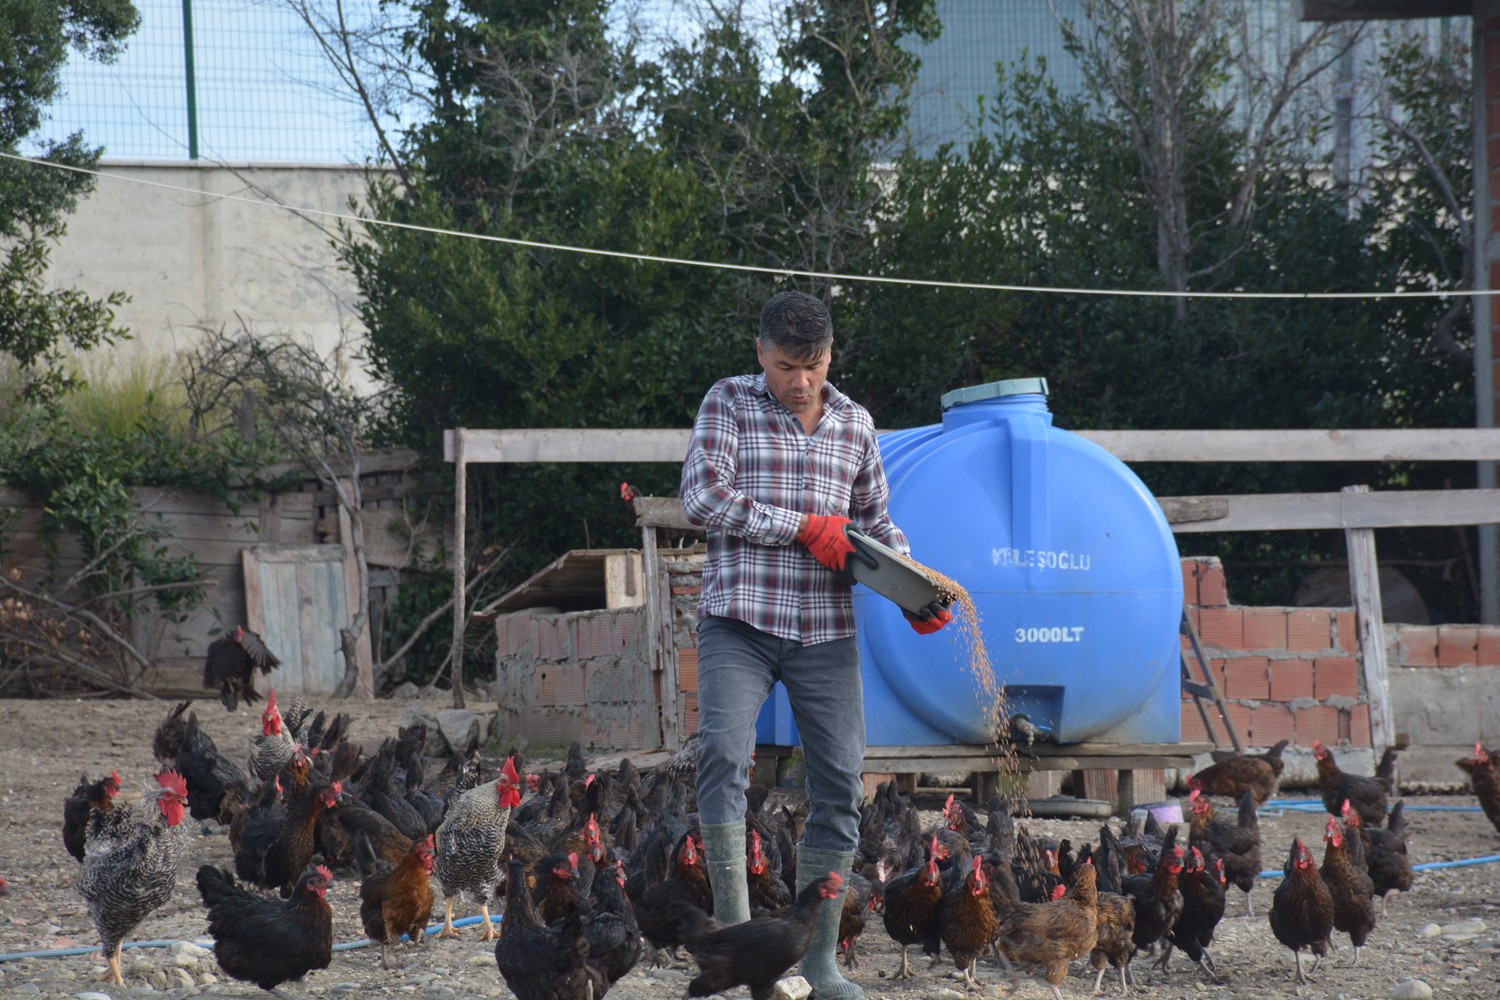 Afgan Ramazani Sinop’ta yumurta üretimi yapıyor #sinop